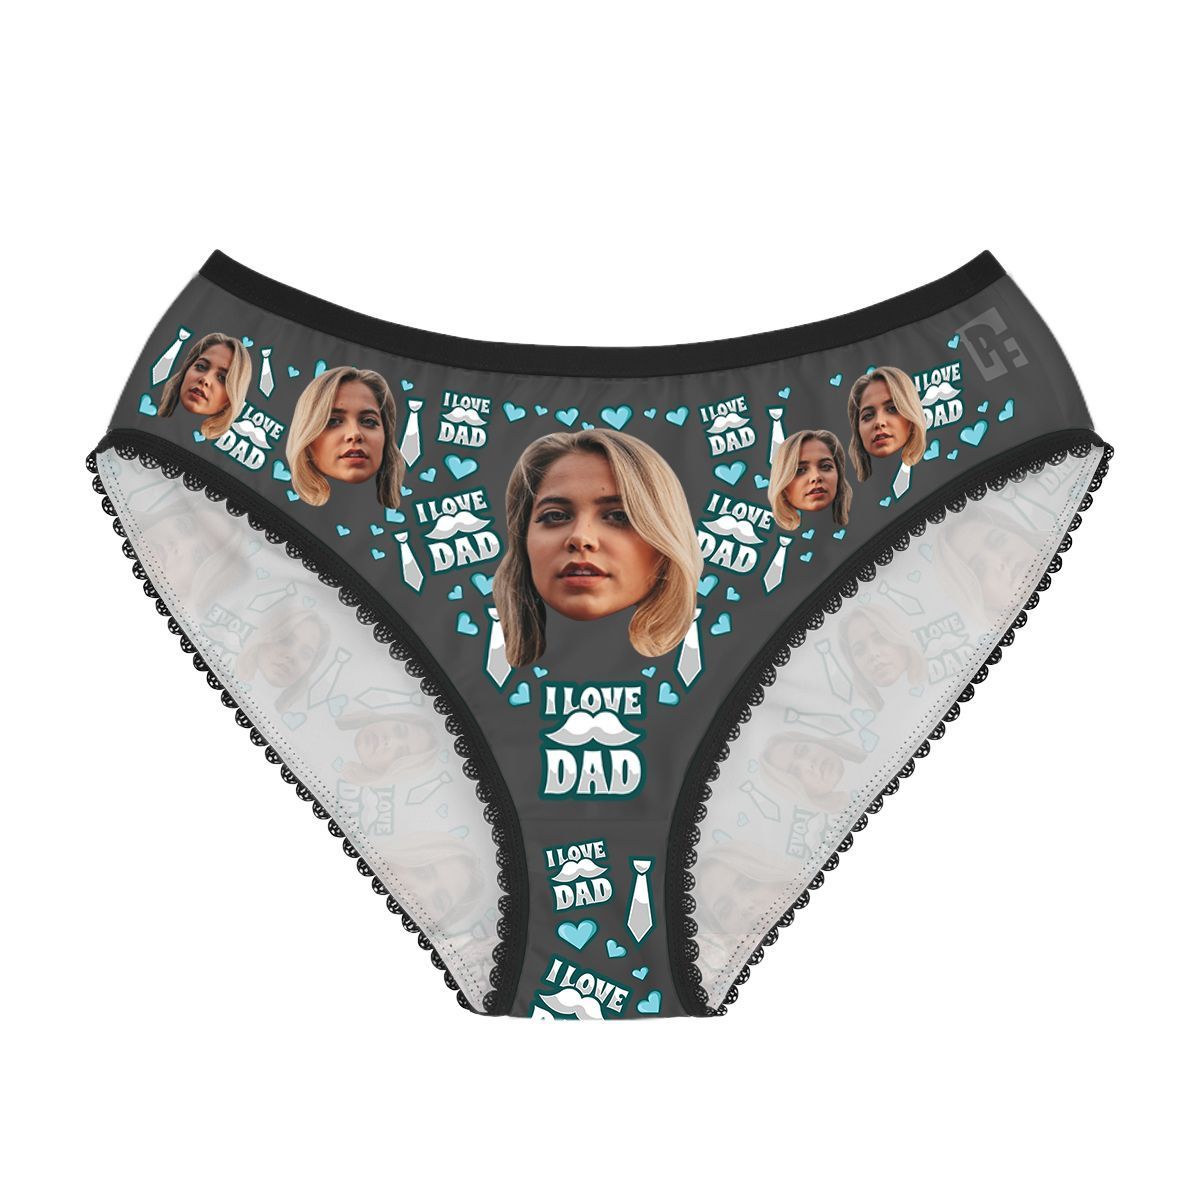 Dark Love dad women's underwear briefs personalized with photo printed on them